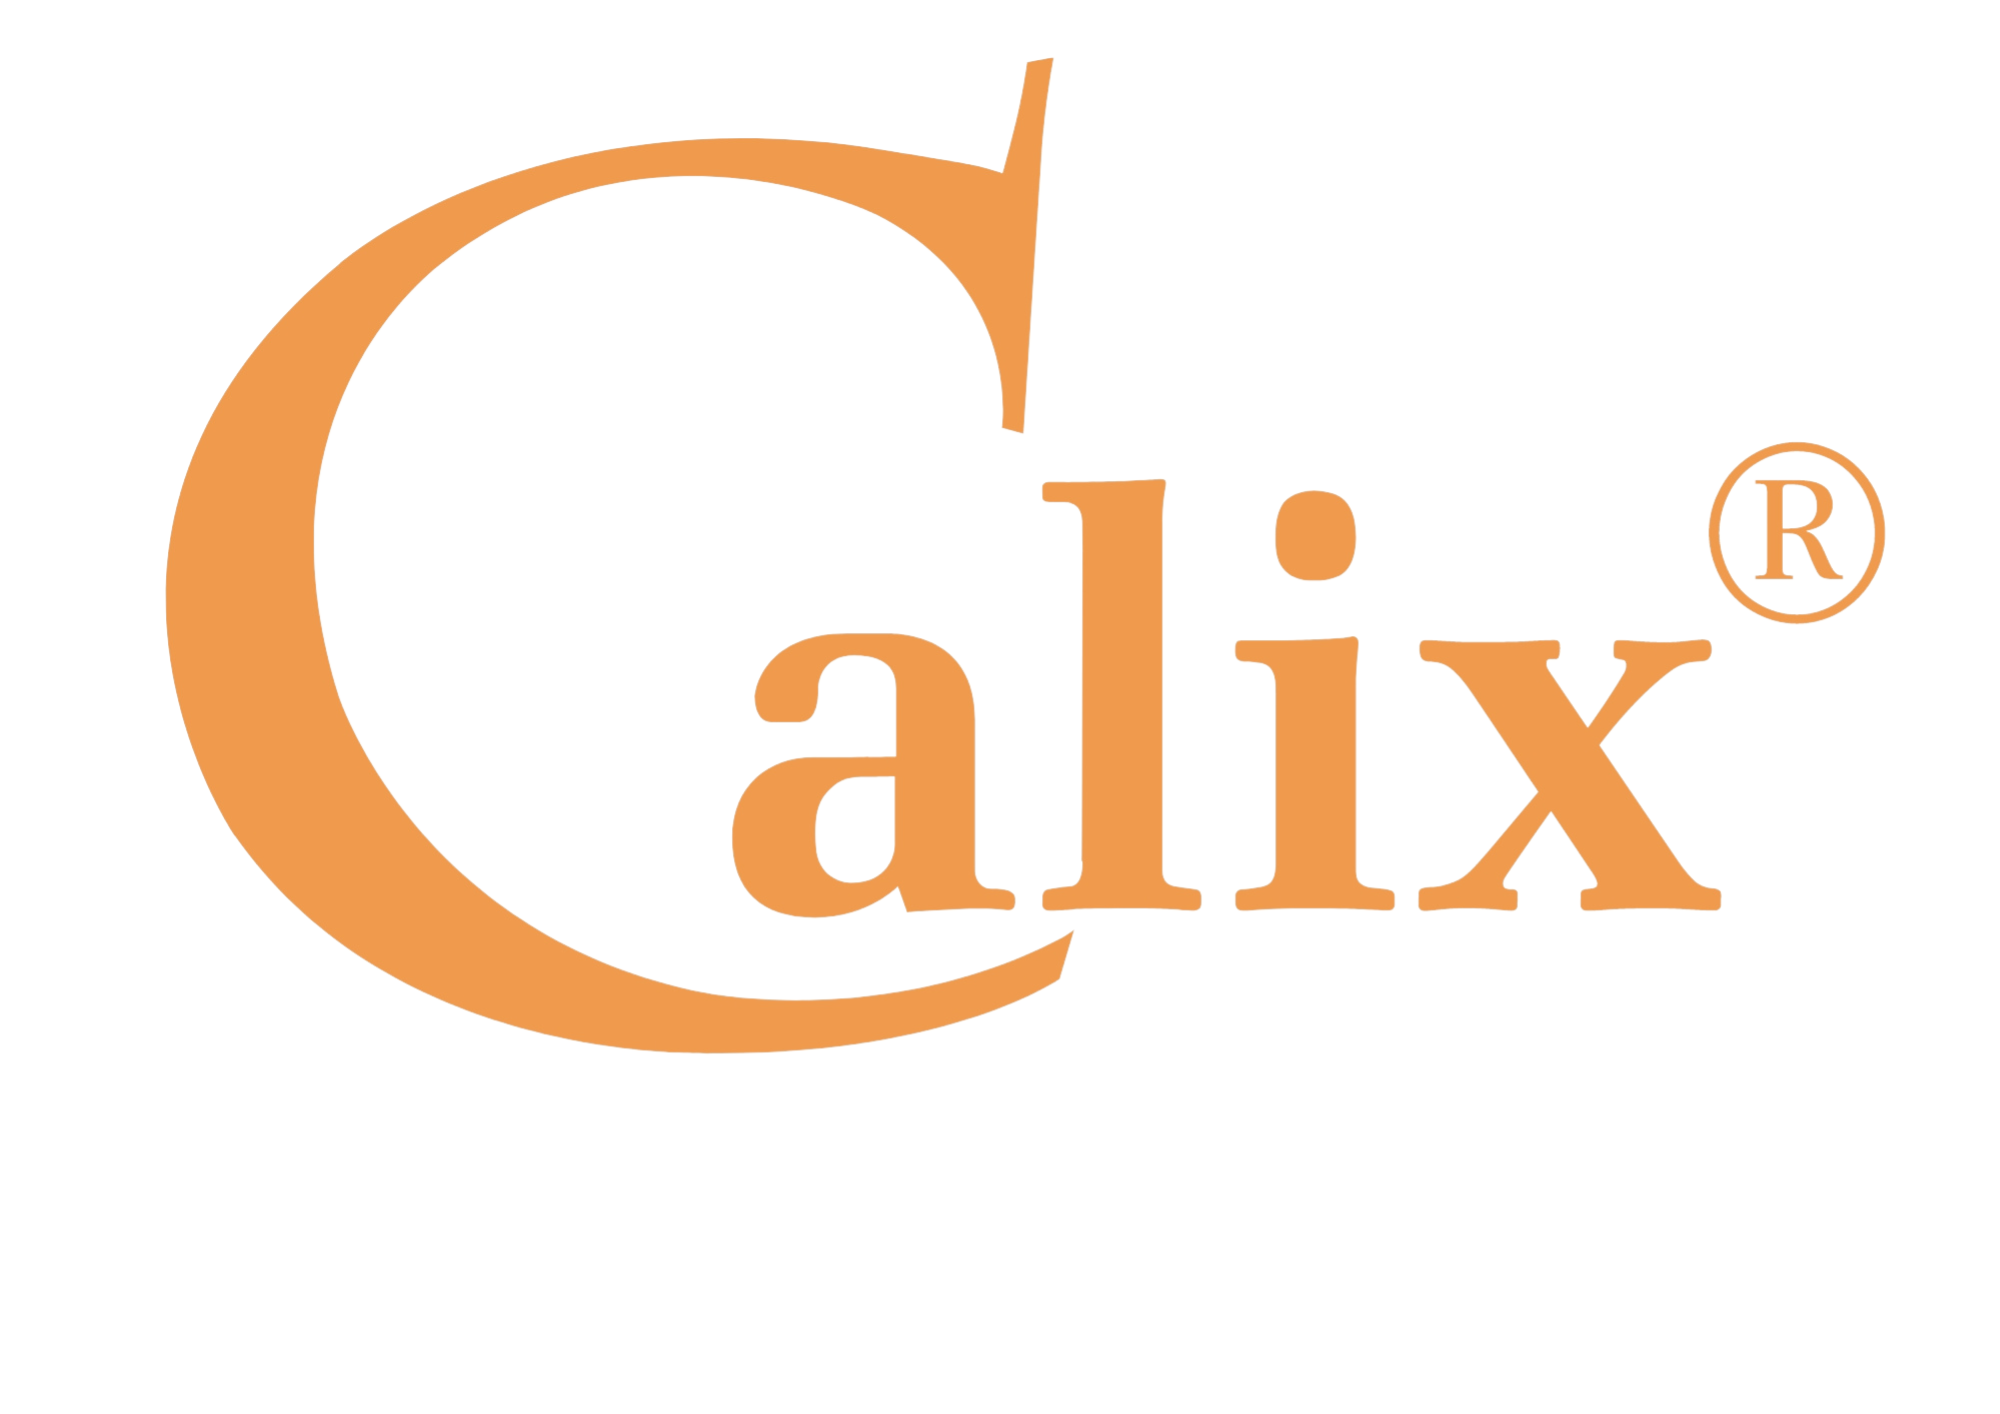 Calix GmbH